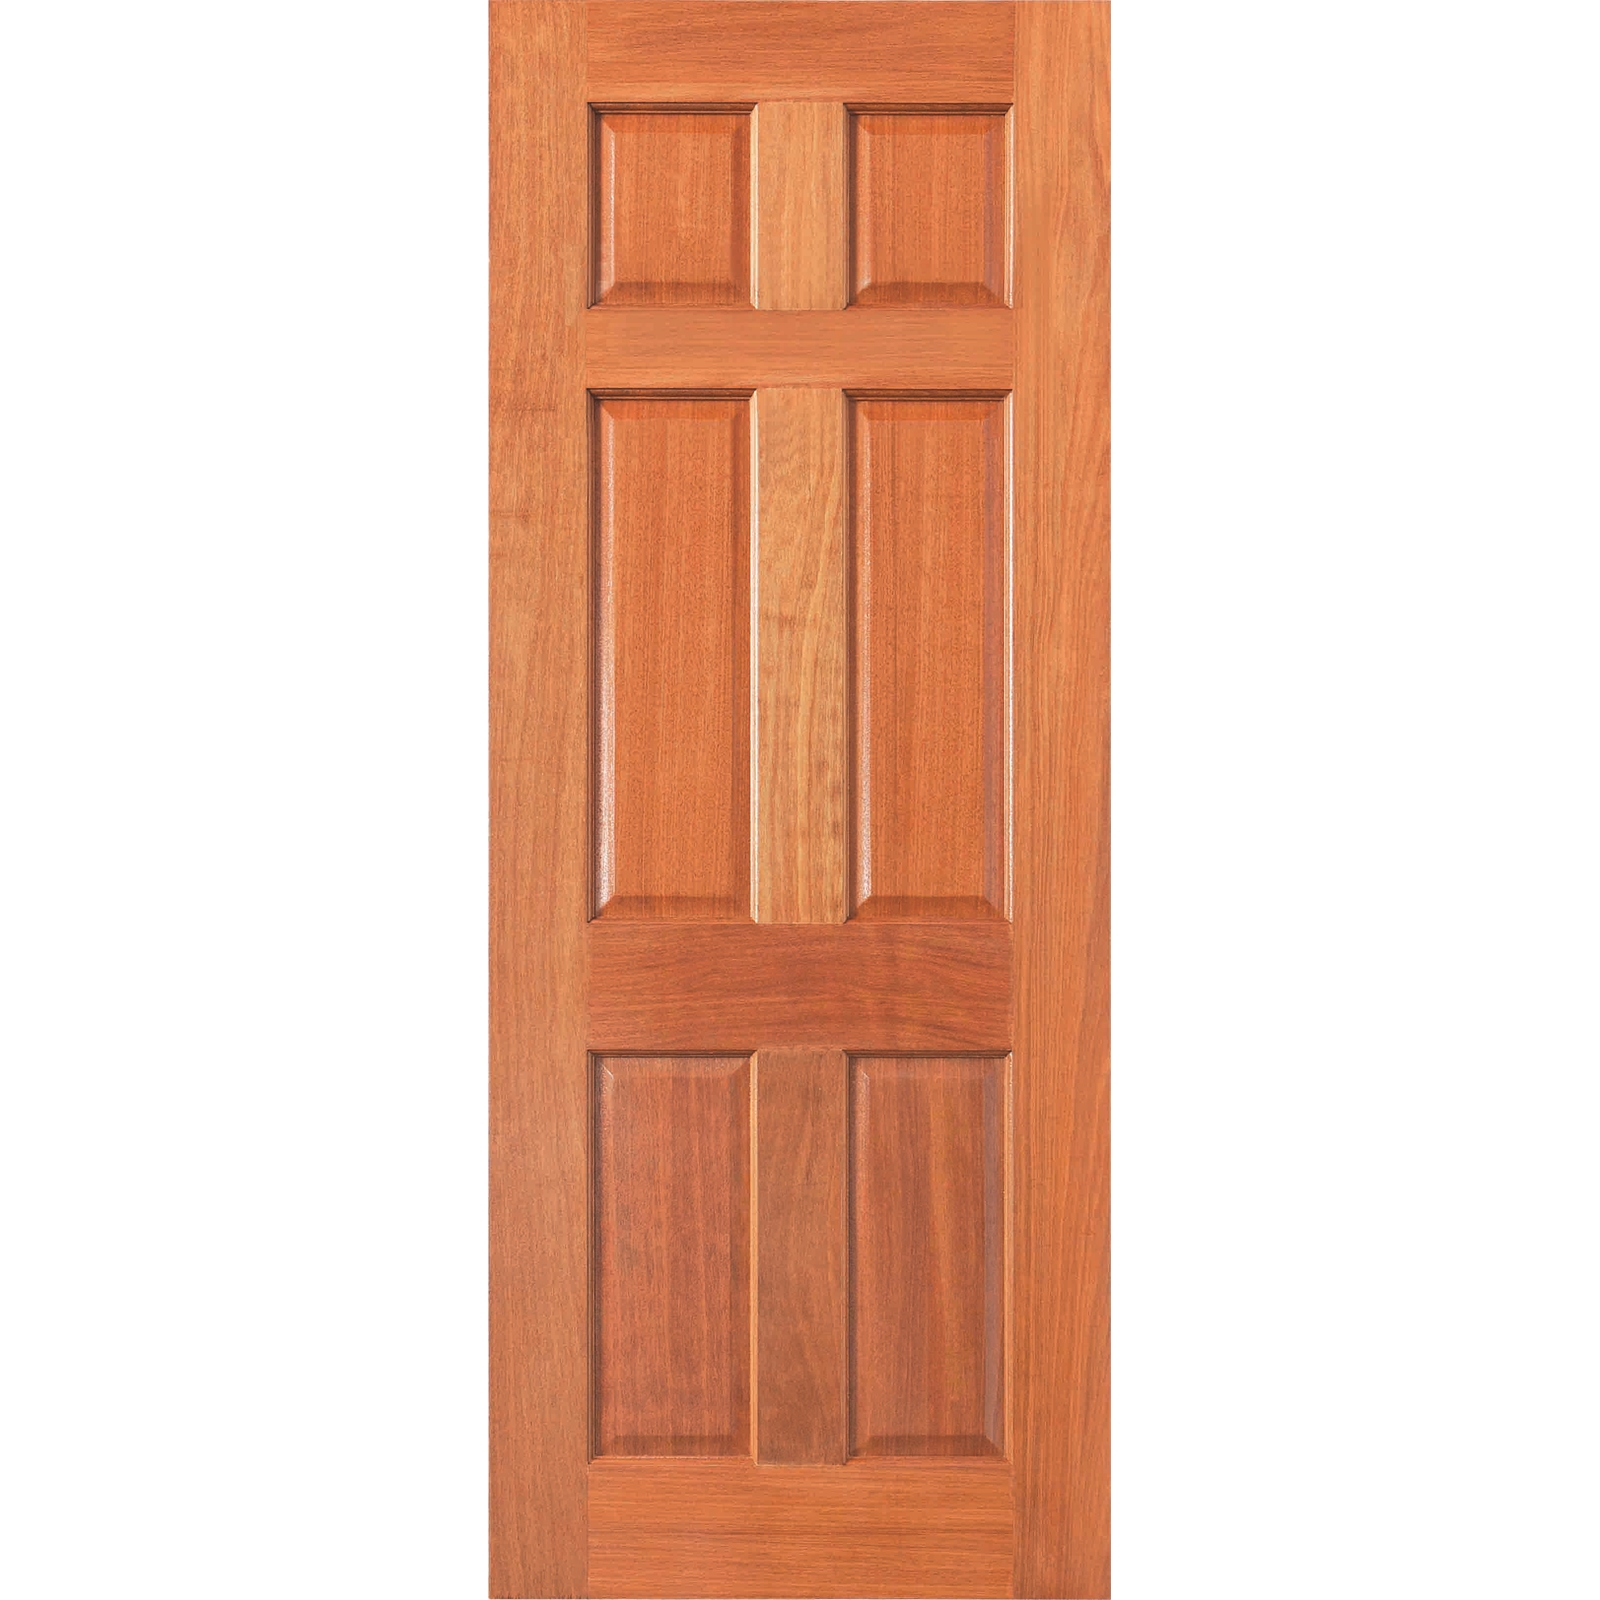 Woodcraft Doors 2040 x 820 x 40mm Exa Solid Entrance Door